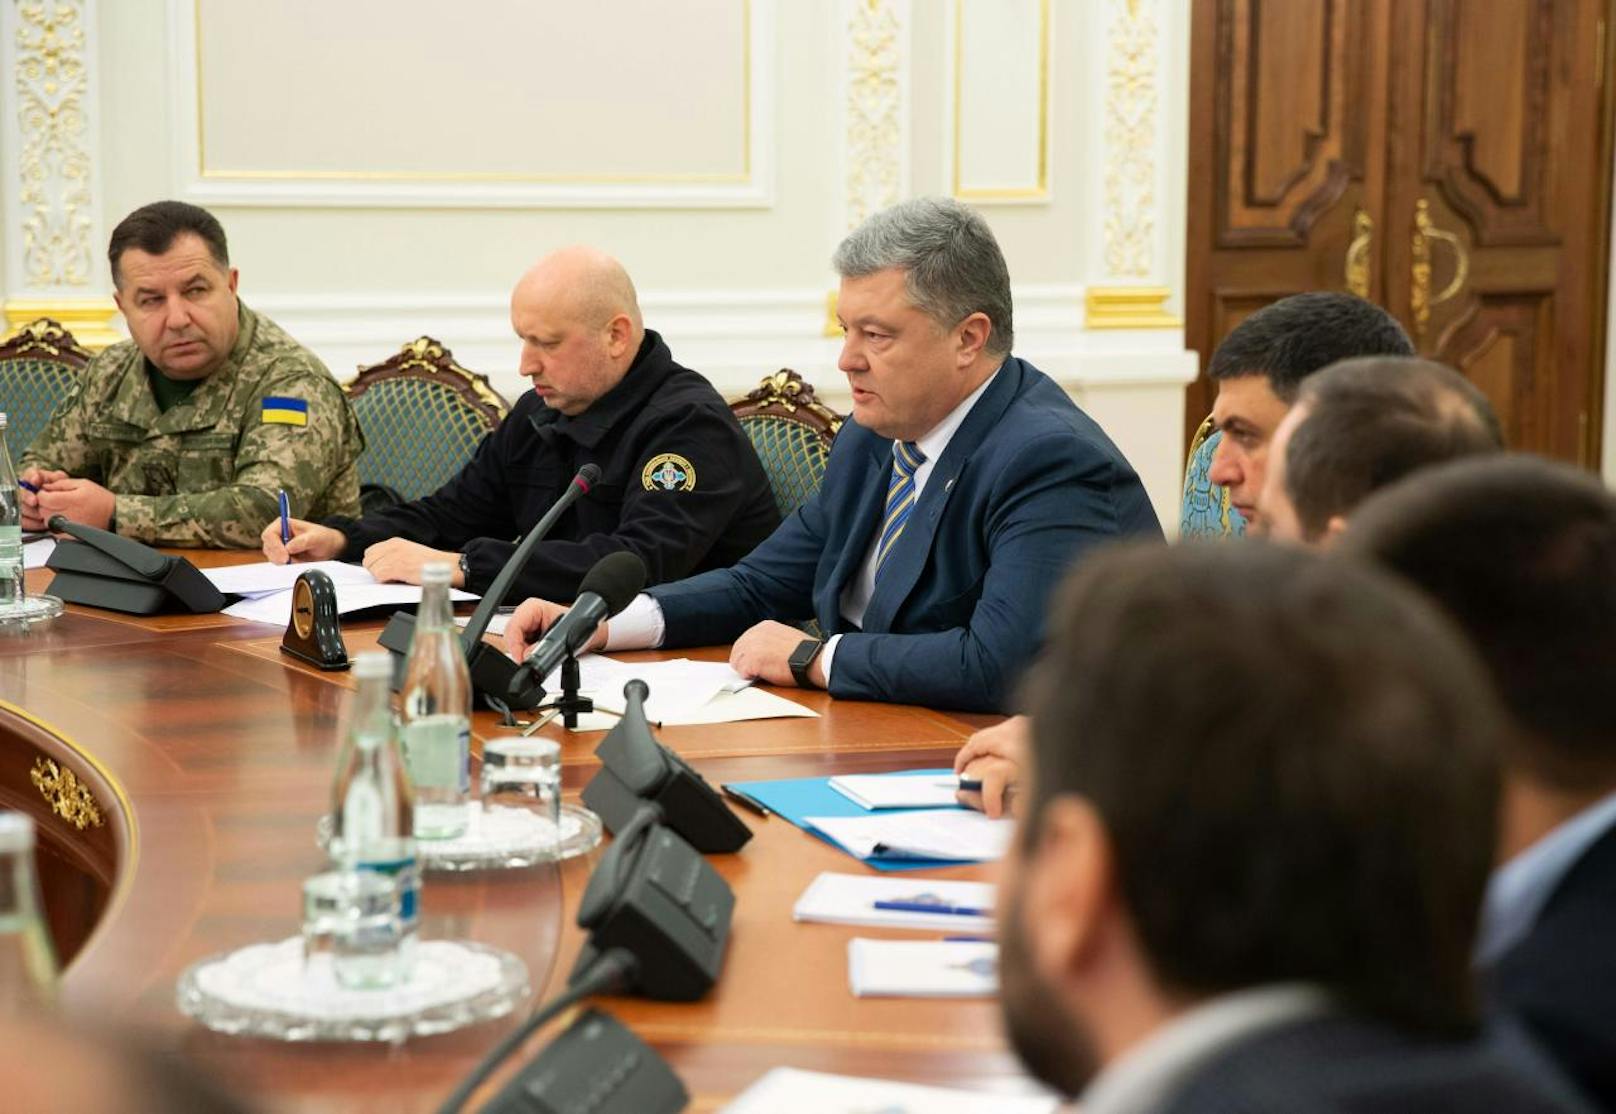 Der ukrainische Präsident Petro Poroschenko erwägt nach dem Zwischenfall das Kriegsrecht auszurufen.